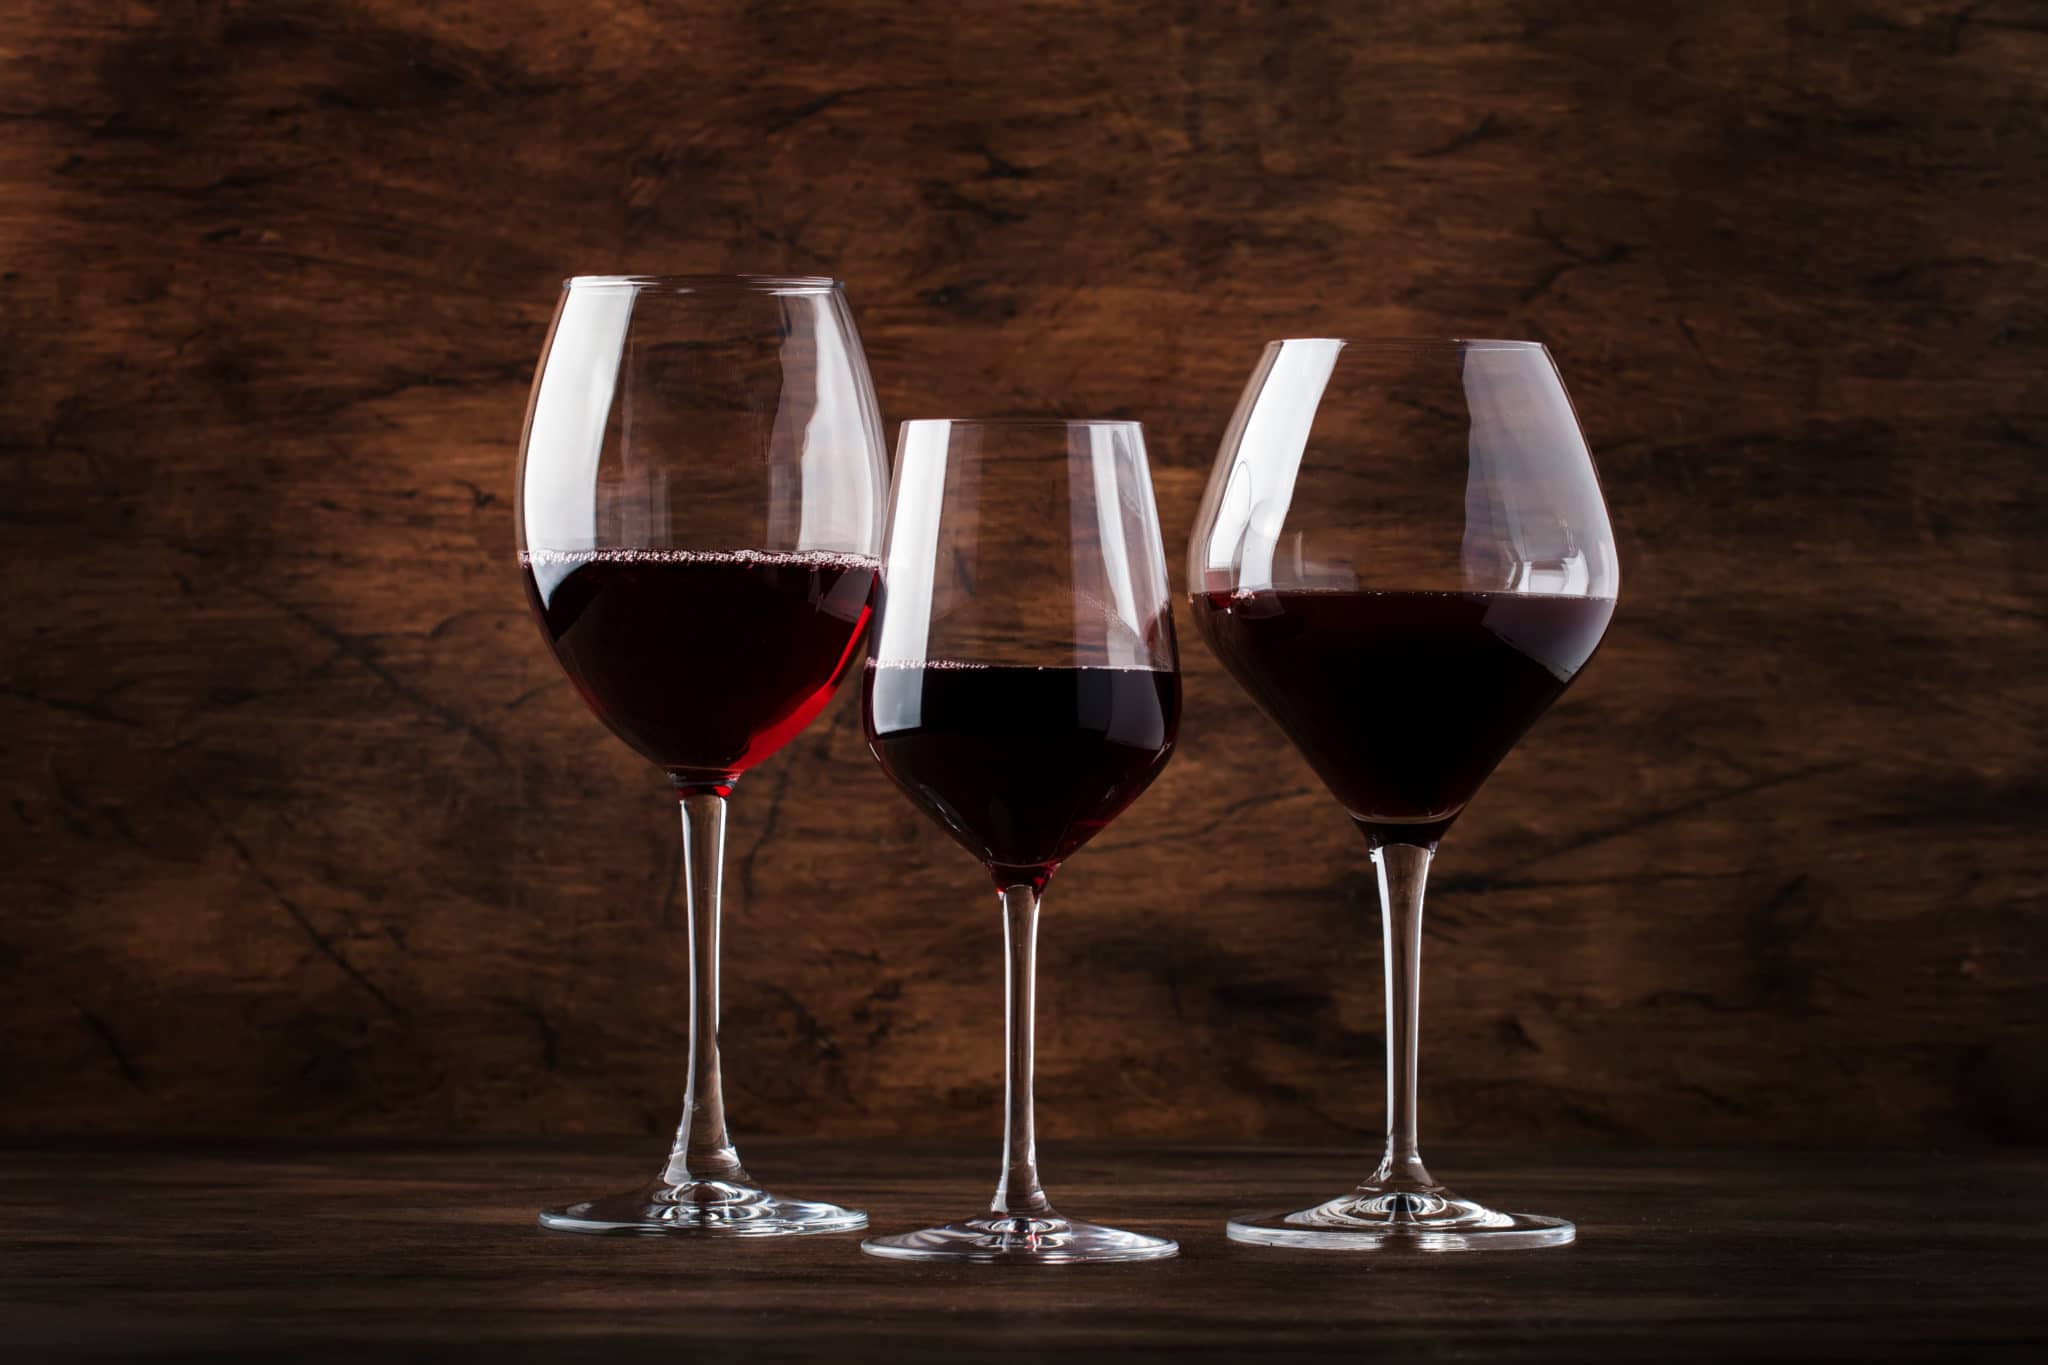 malbec wine vs cabernet sauvignon